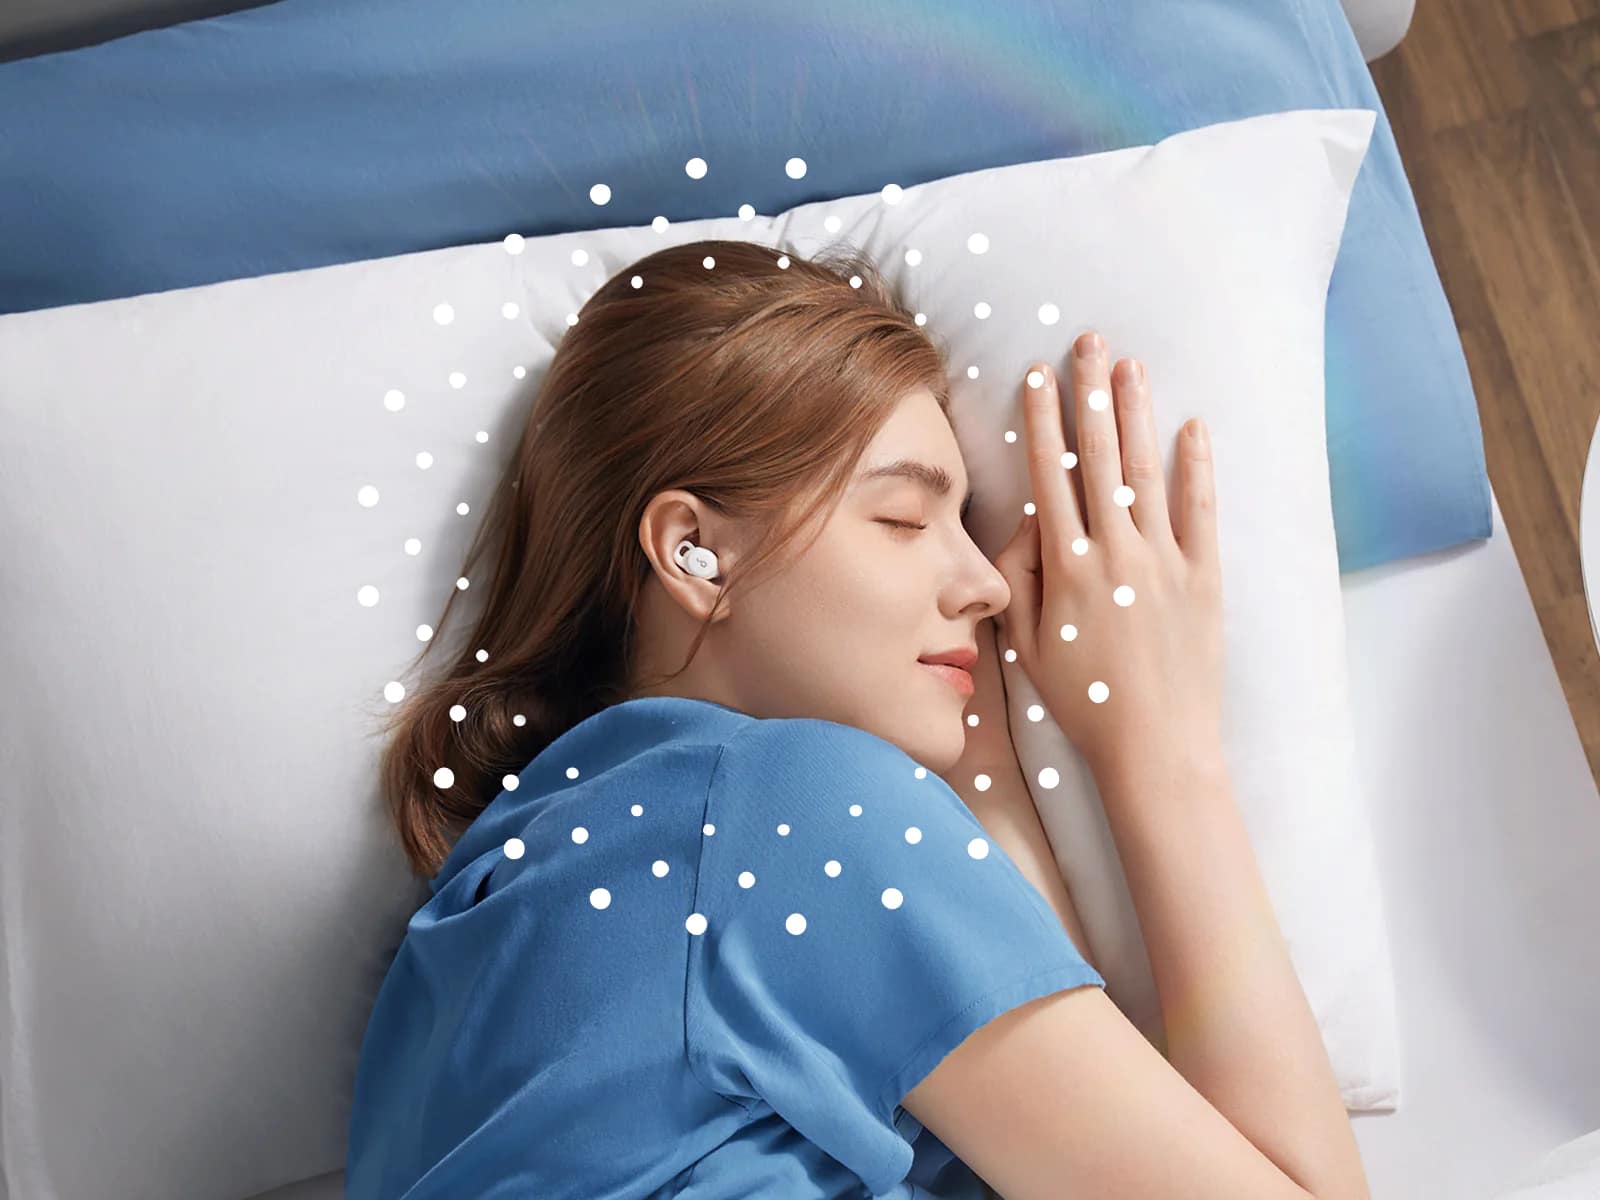 Is It Bad to Sleep with Headphones On? - soundcore US